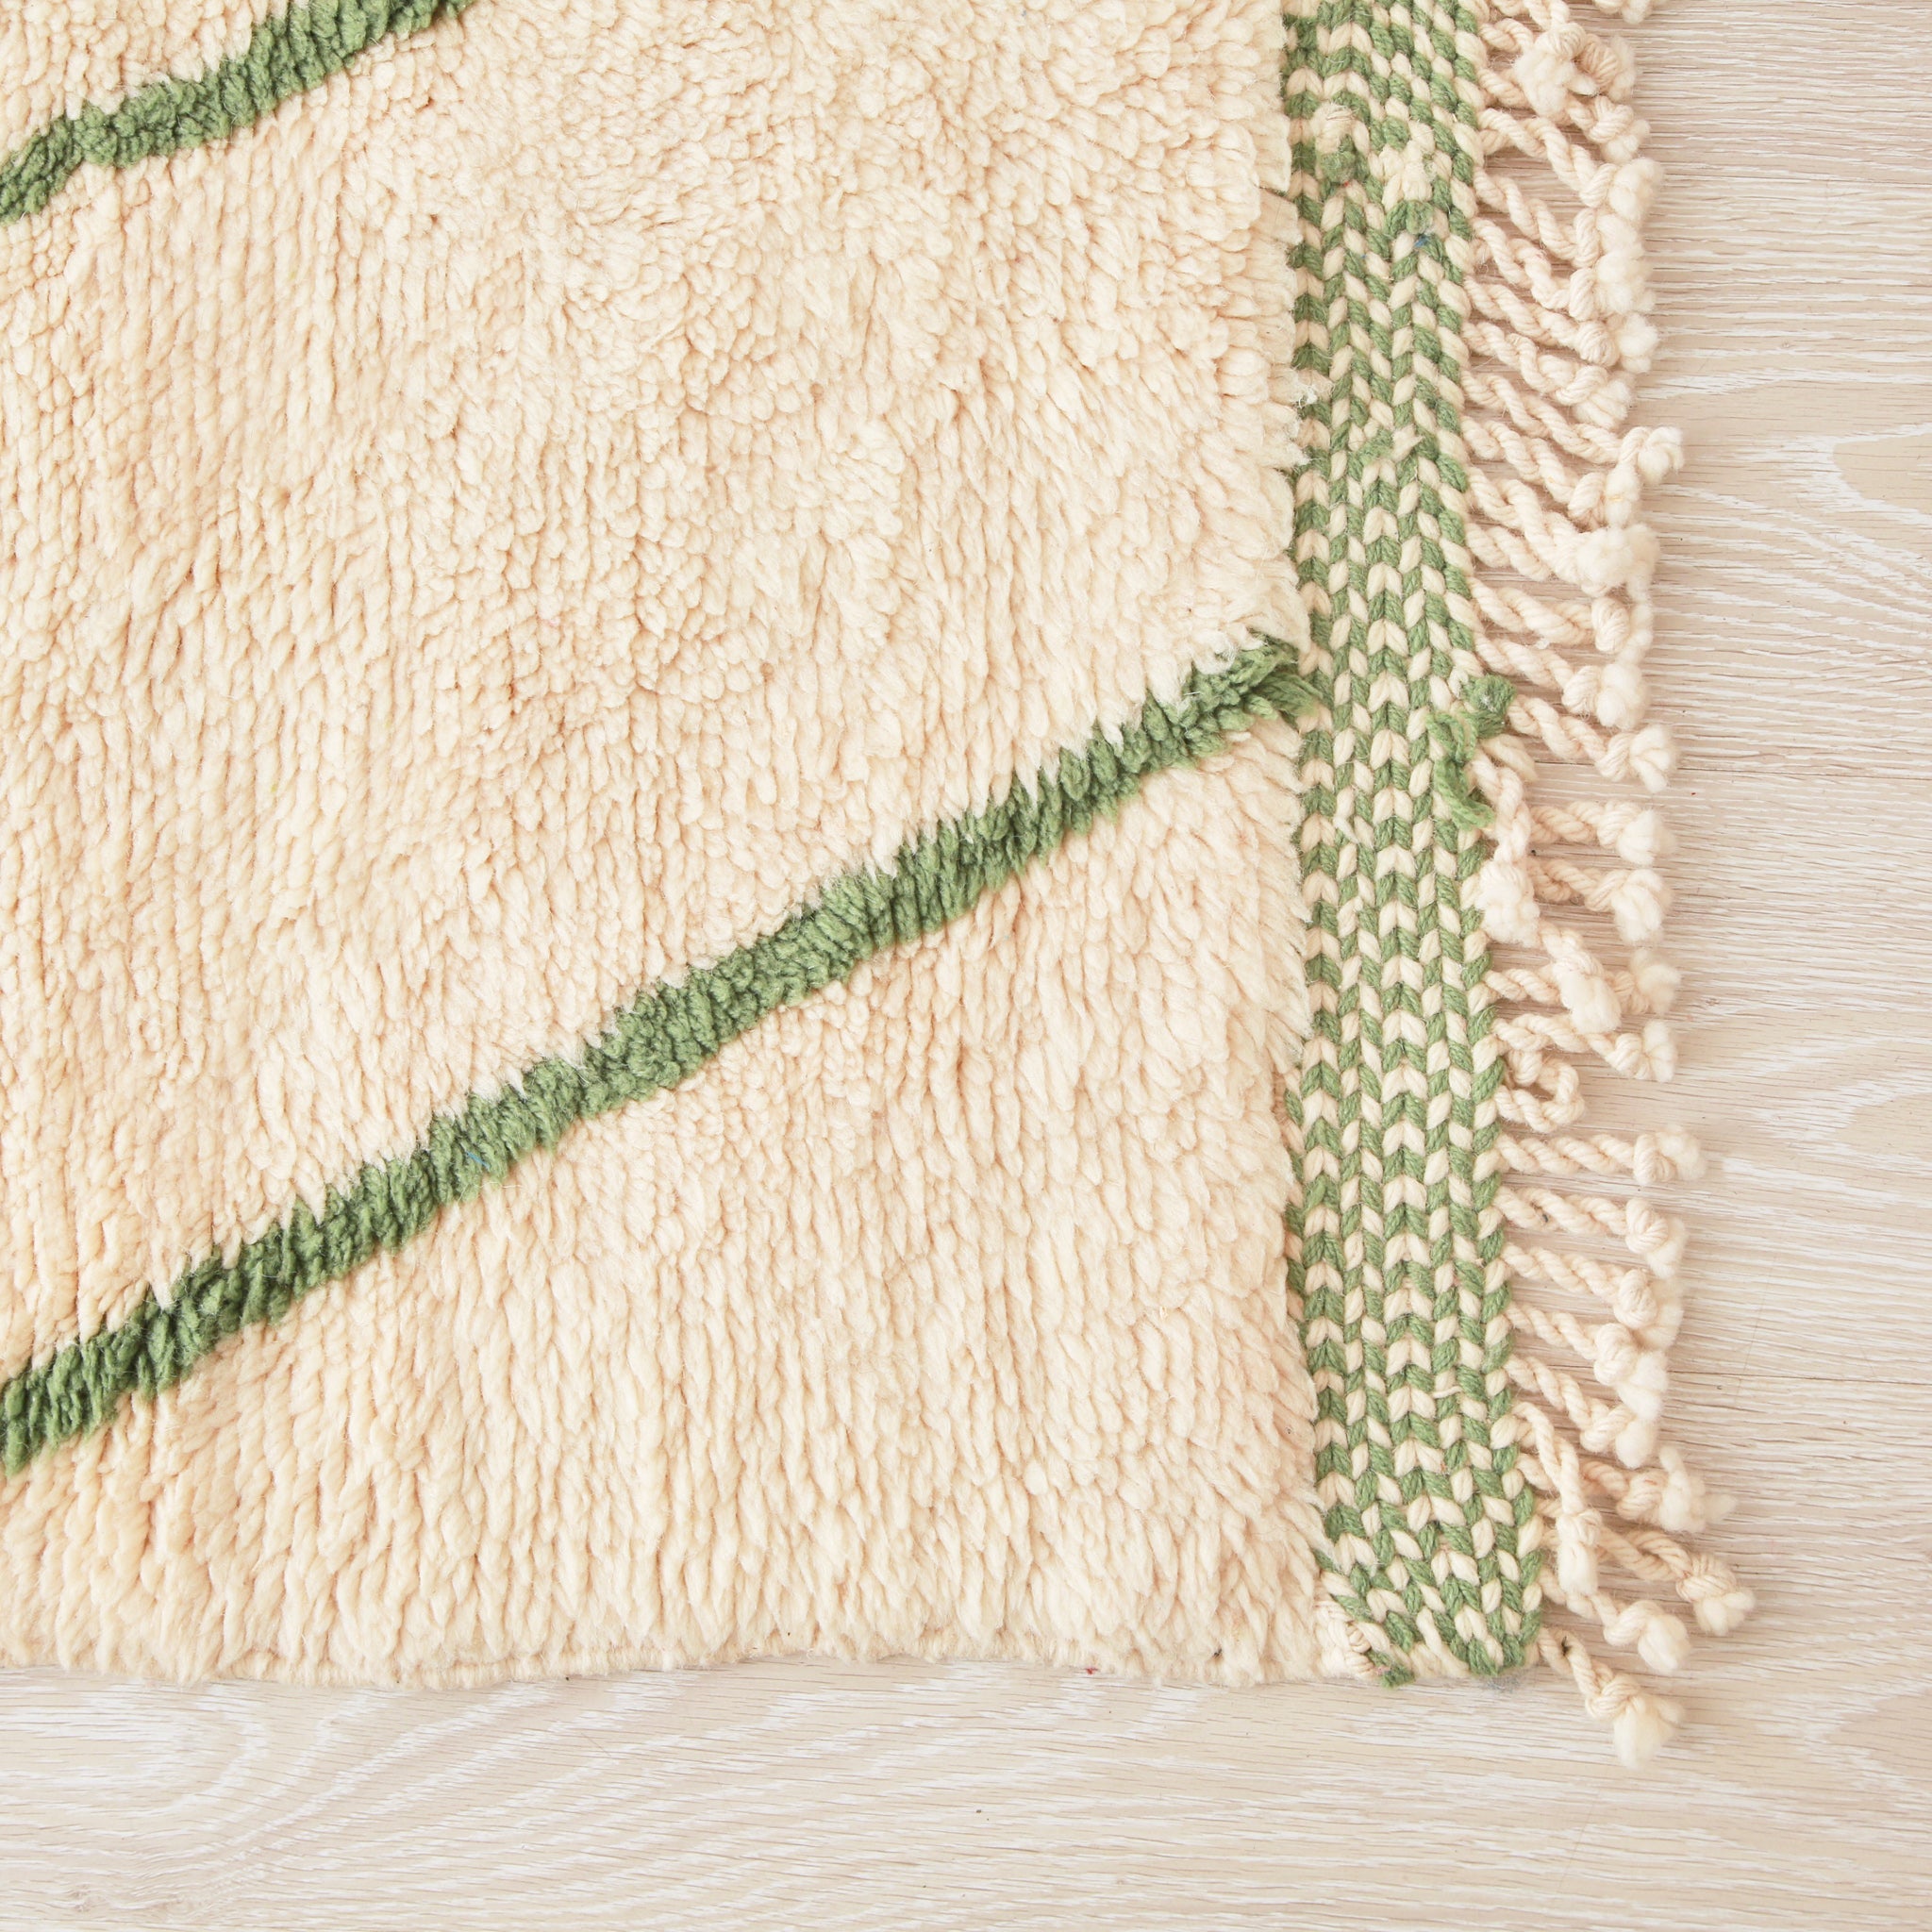 angolo di un tappeto beni mrirt in lana bianca con due riche verdi e bordo della frangia ricamato in bianco e verde